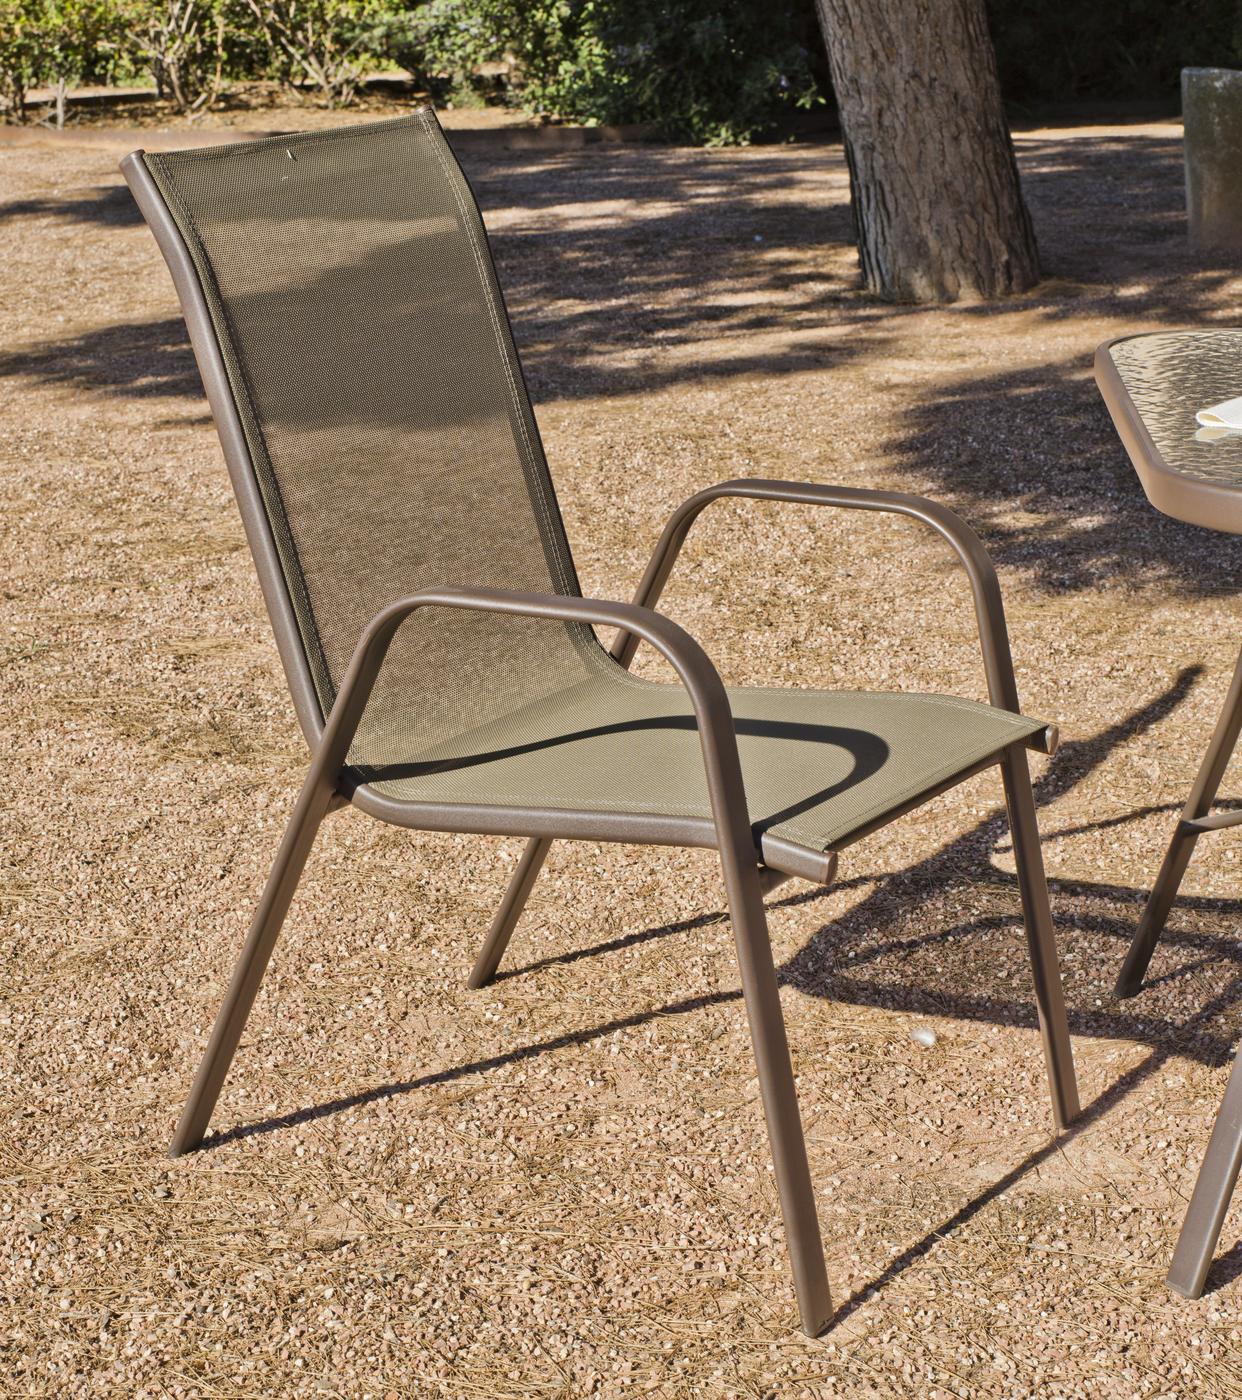 Set Acero Macao-105/4 - Conjunto para jardín de acero inoxidable: 1 mesa redonda con tablero de cristal templado + 4 sillones de acero y textilen